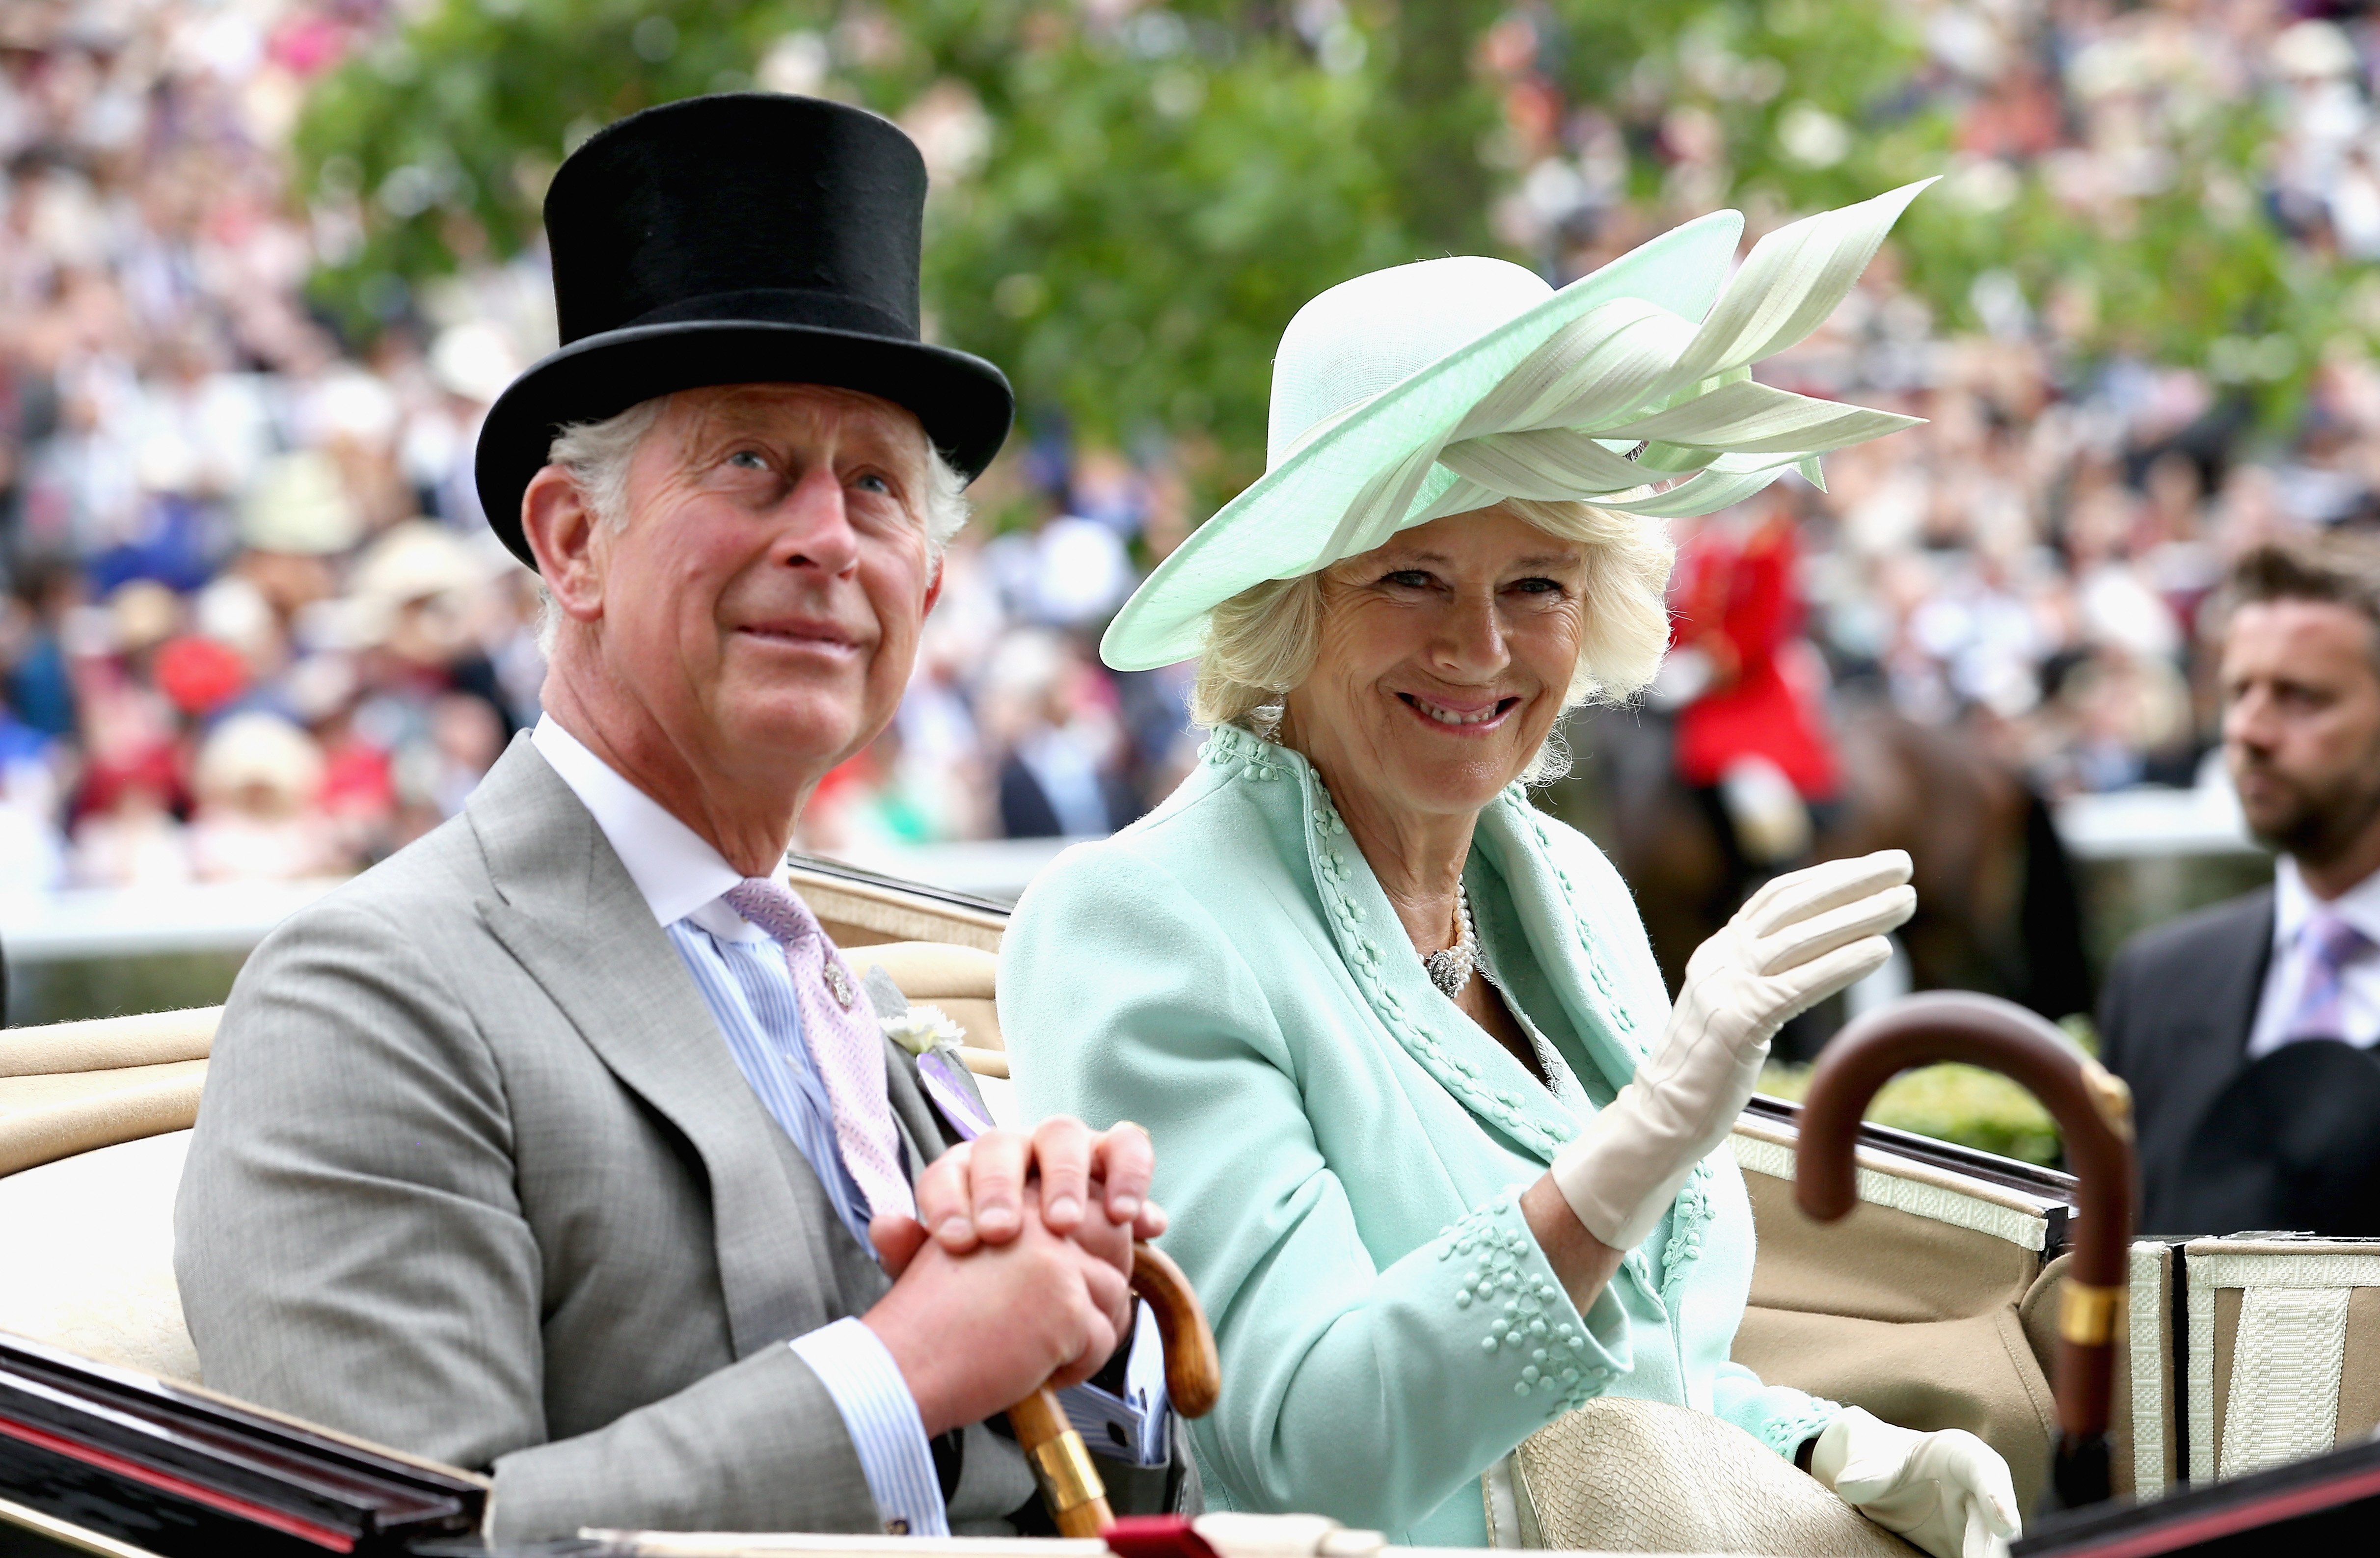 El rey Charles III y la reina consorte Camilla en Ascot, Inglaterra, en 2015. | Foto: Getty Images